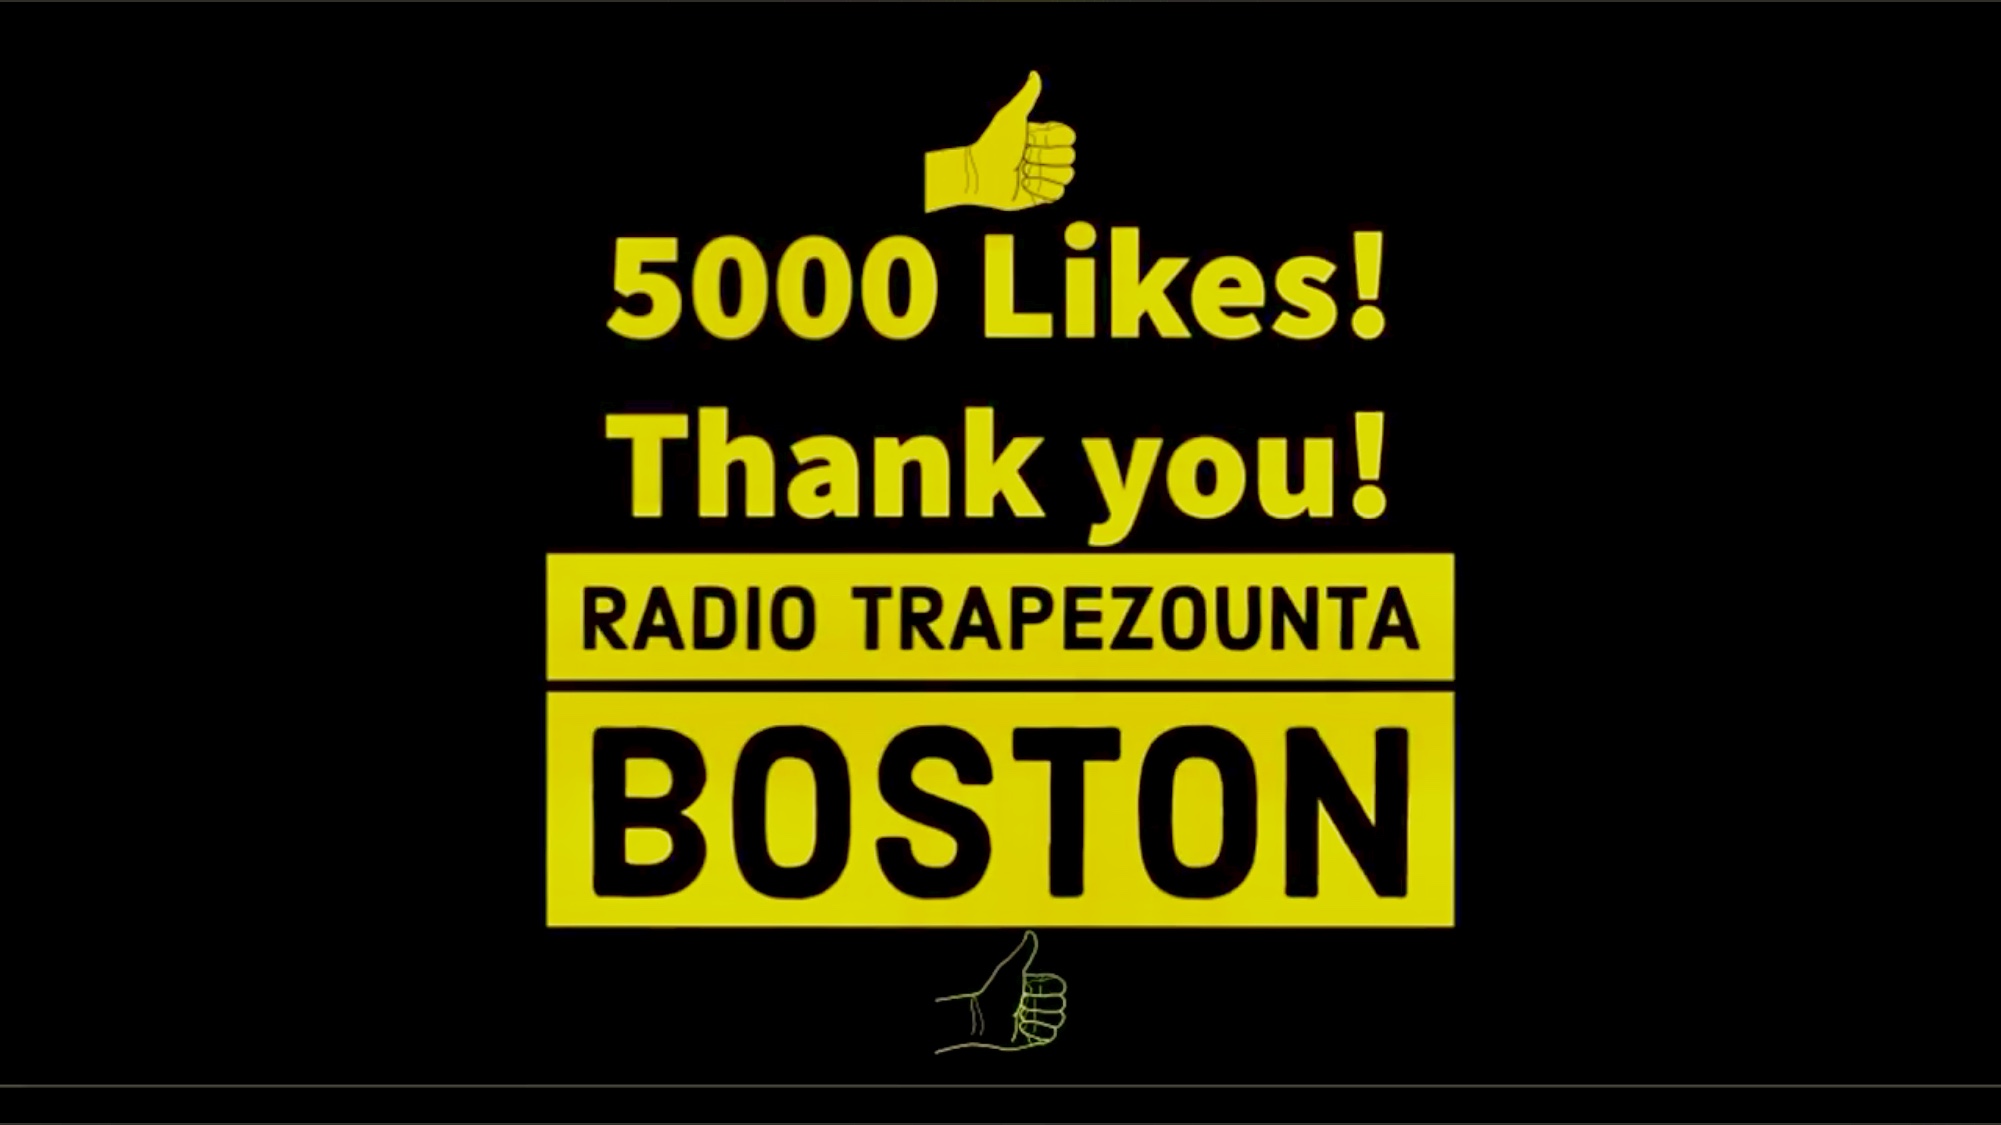 5000 Likes on our Facebook Page! Radio Trapezounta Boston